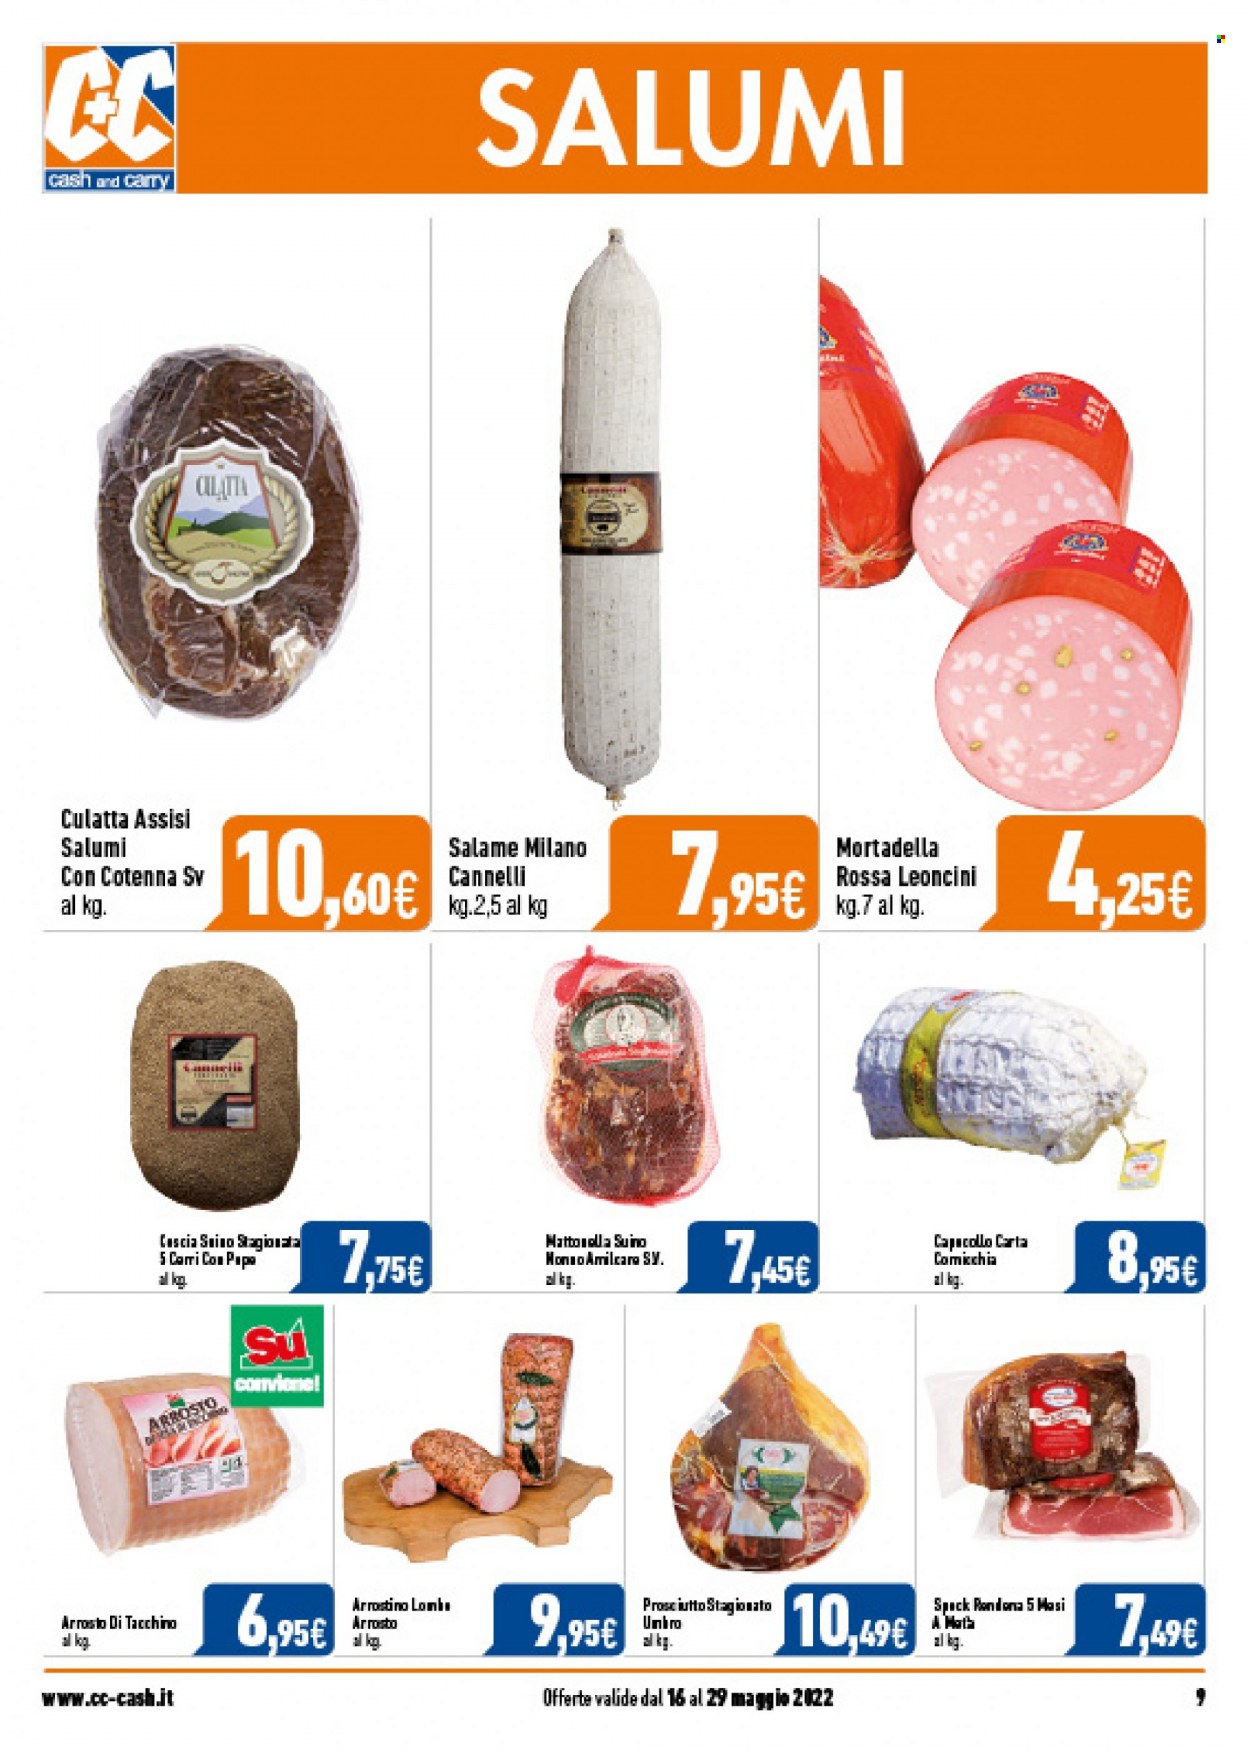 thumbnail - Volantino C+C Cash & Carry - 16/5/2022 - 29/5/2022 - Prodotti in offerta - suino, tacchino arrosto, prosciutto, salame, mortadella. Pagina 9.